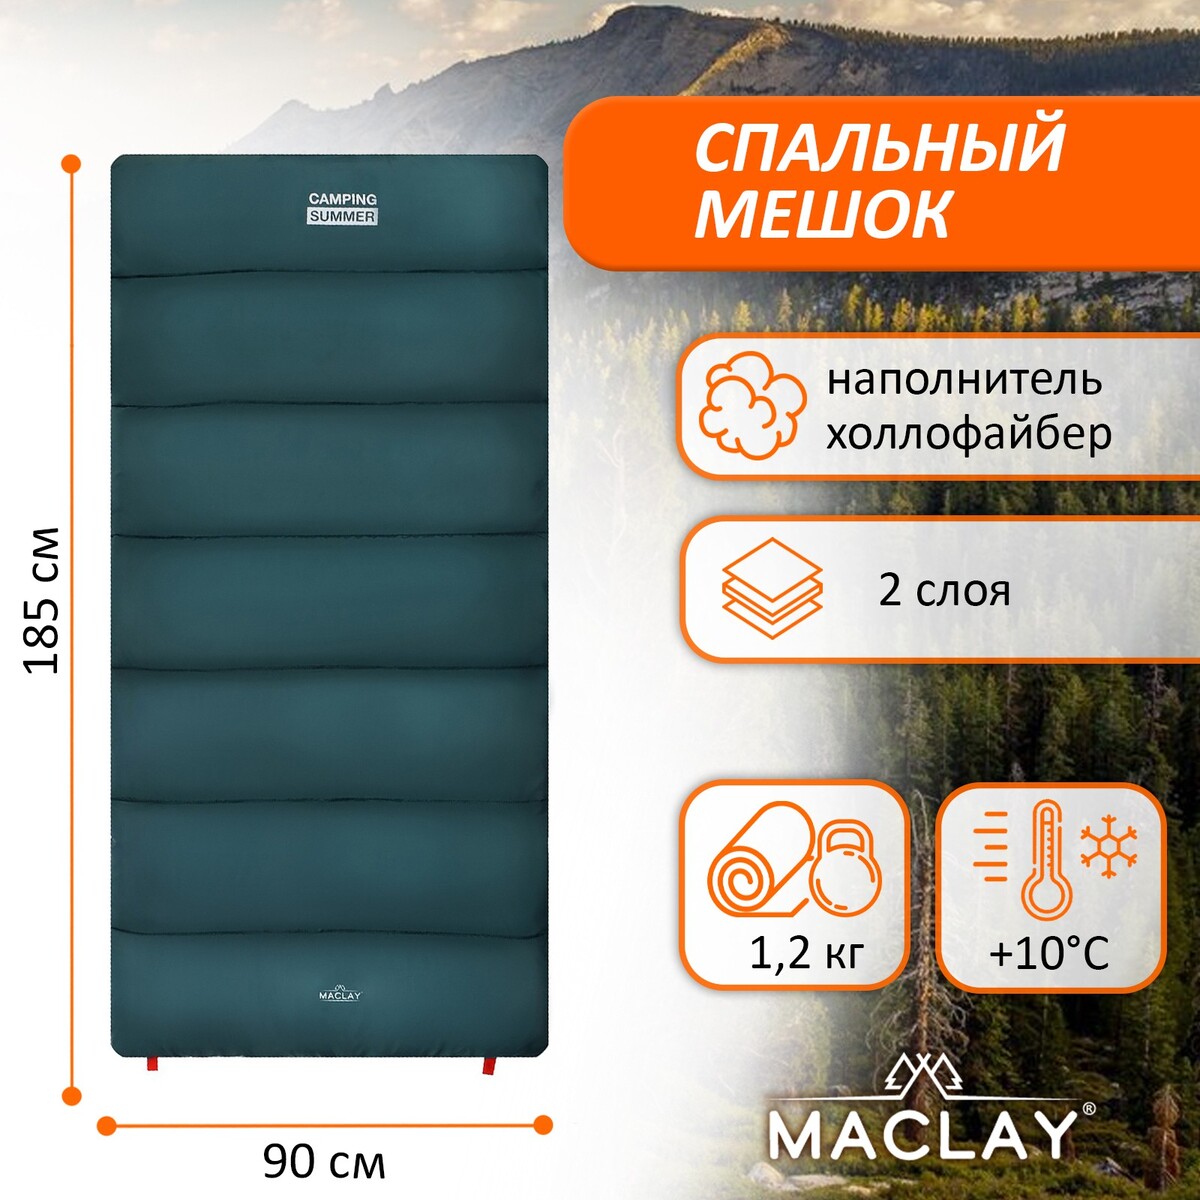 Спальный мешок maclay camping summer, одеяло, 2 слоя, левый, 185х90 см, +10/+25°с Maclay, цвет зеленый